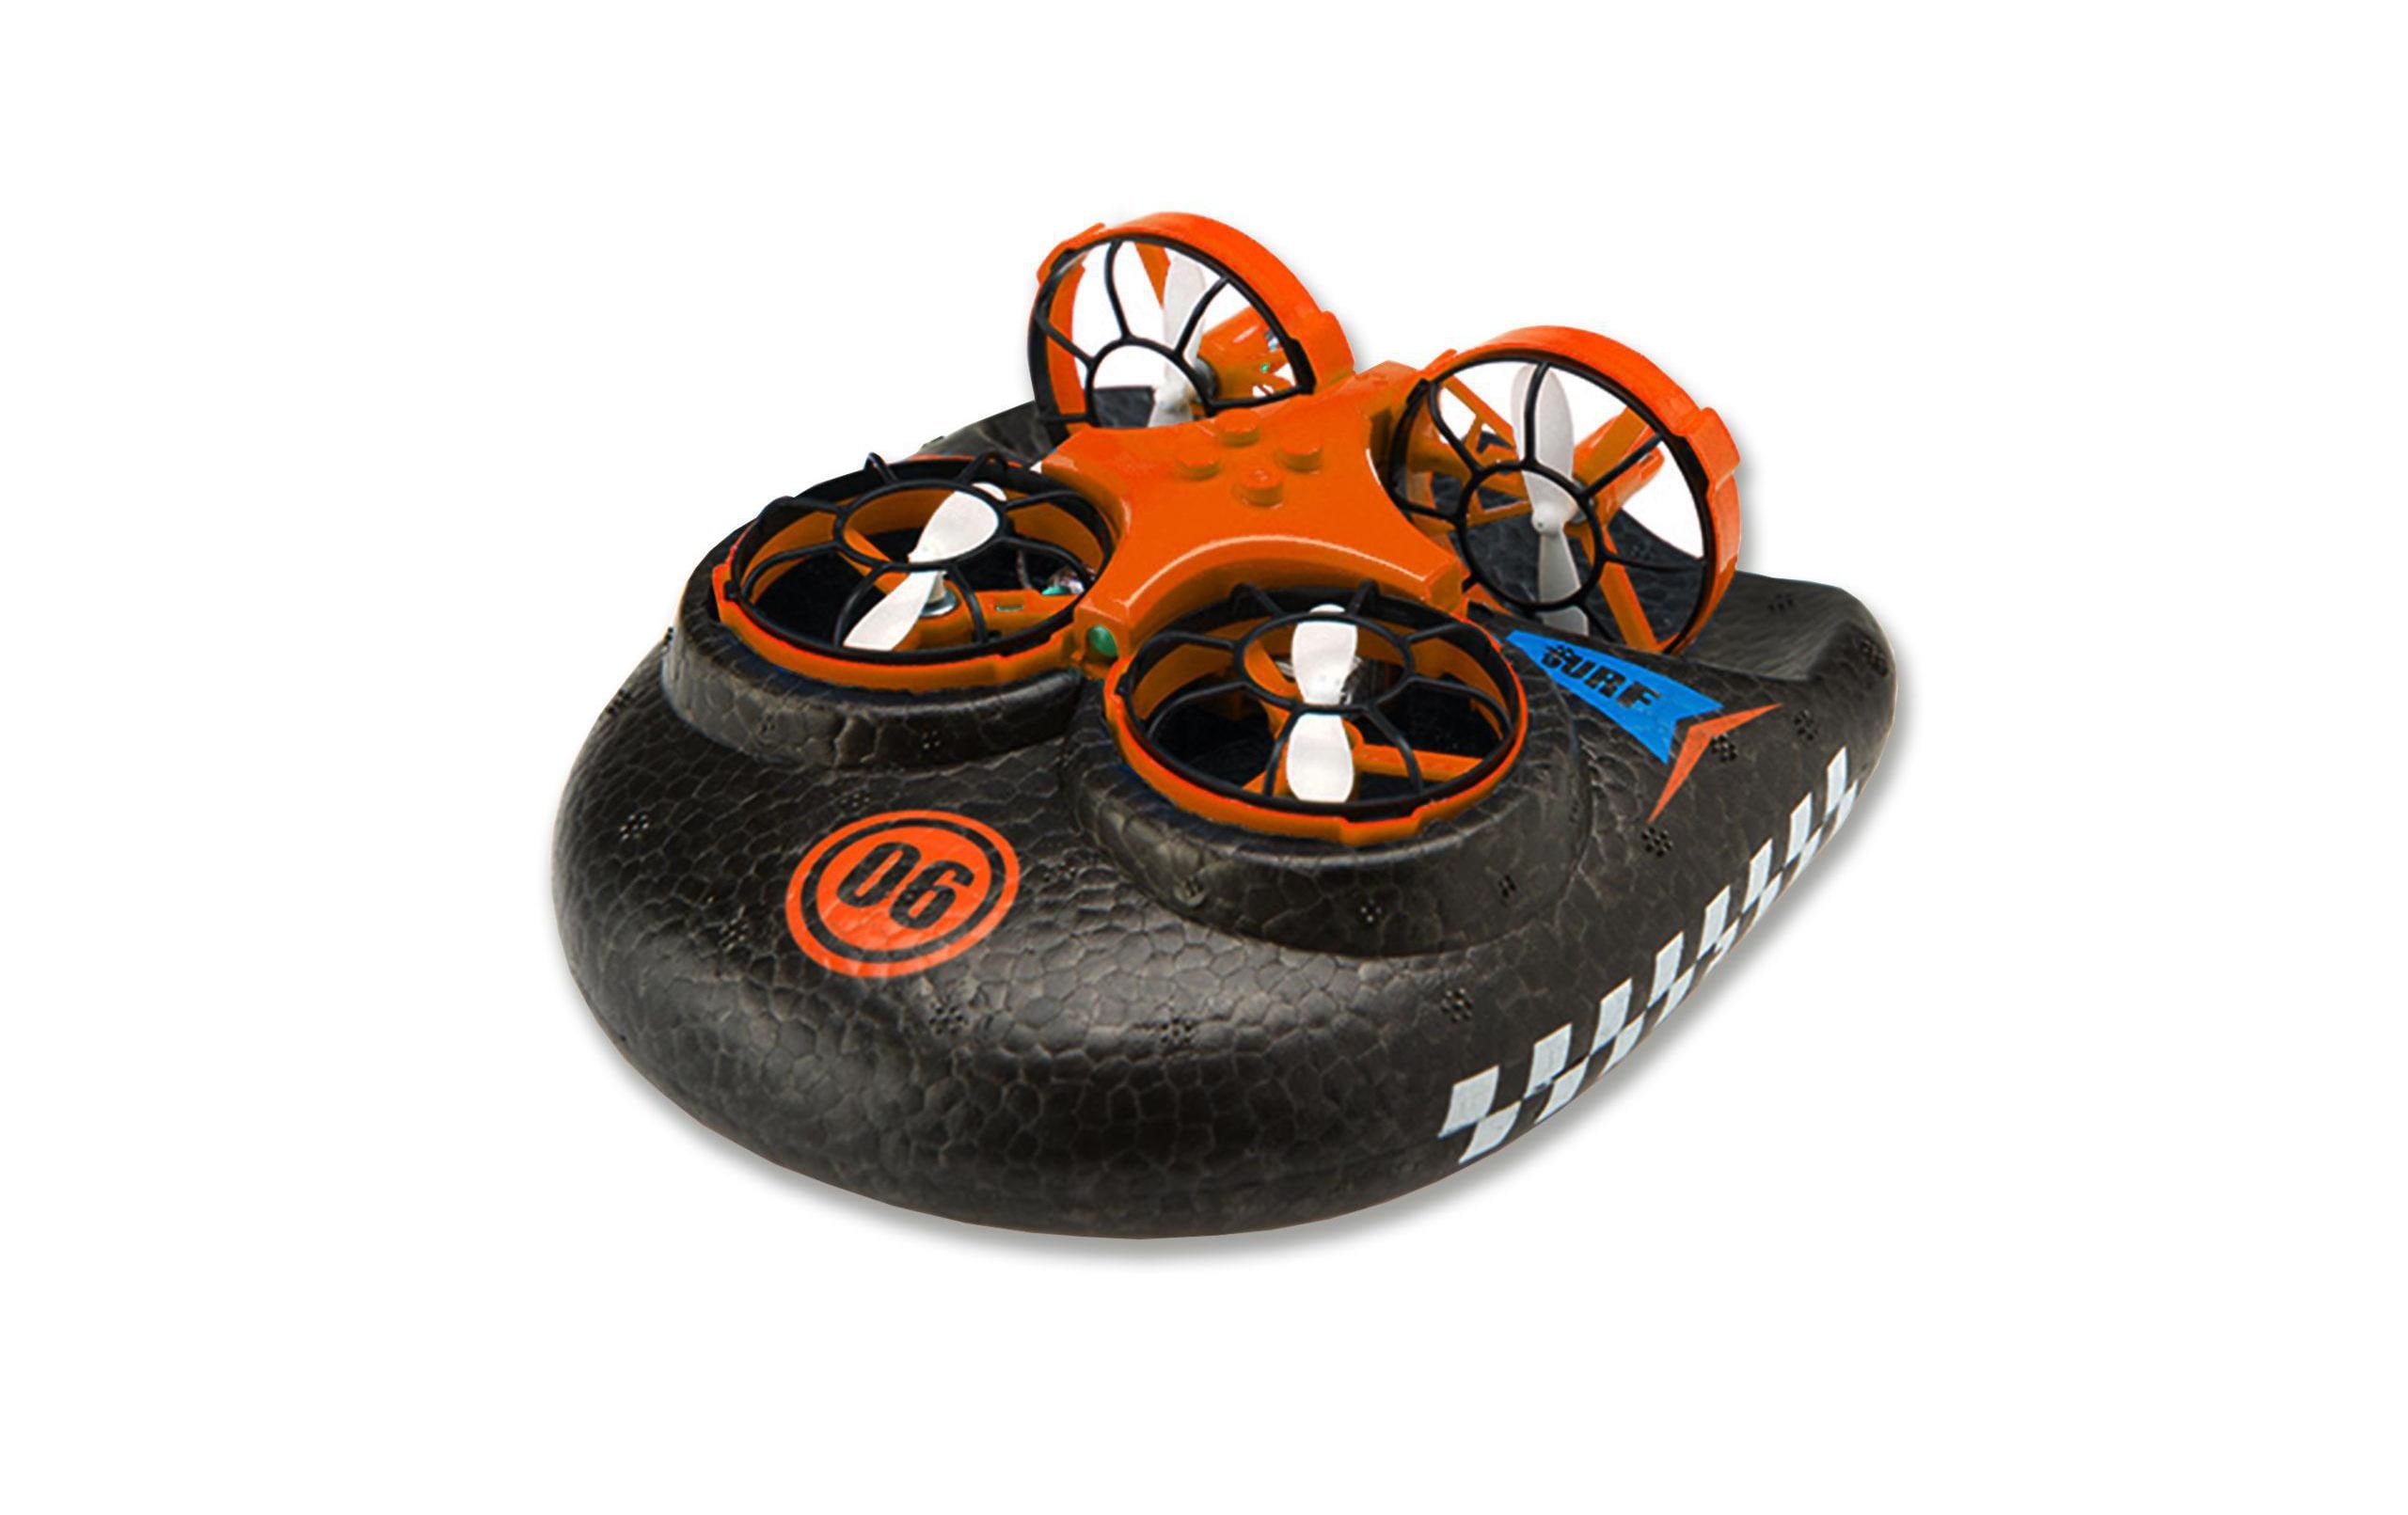 Amewi Trix 3-in-1 Hovercraft Drone Orange